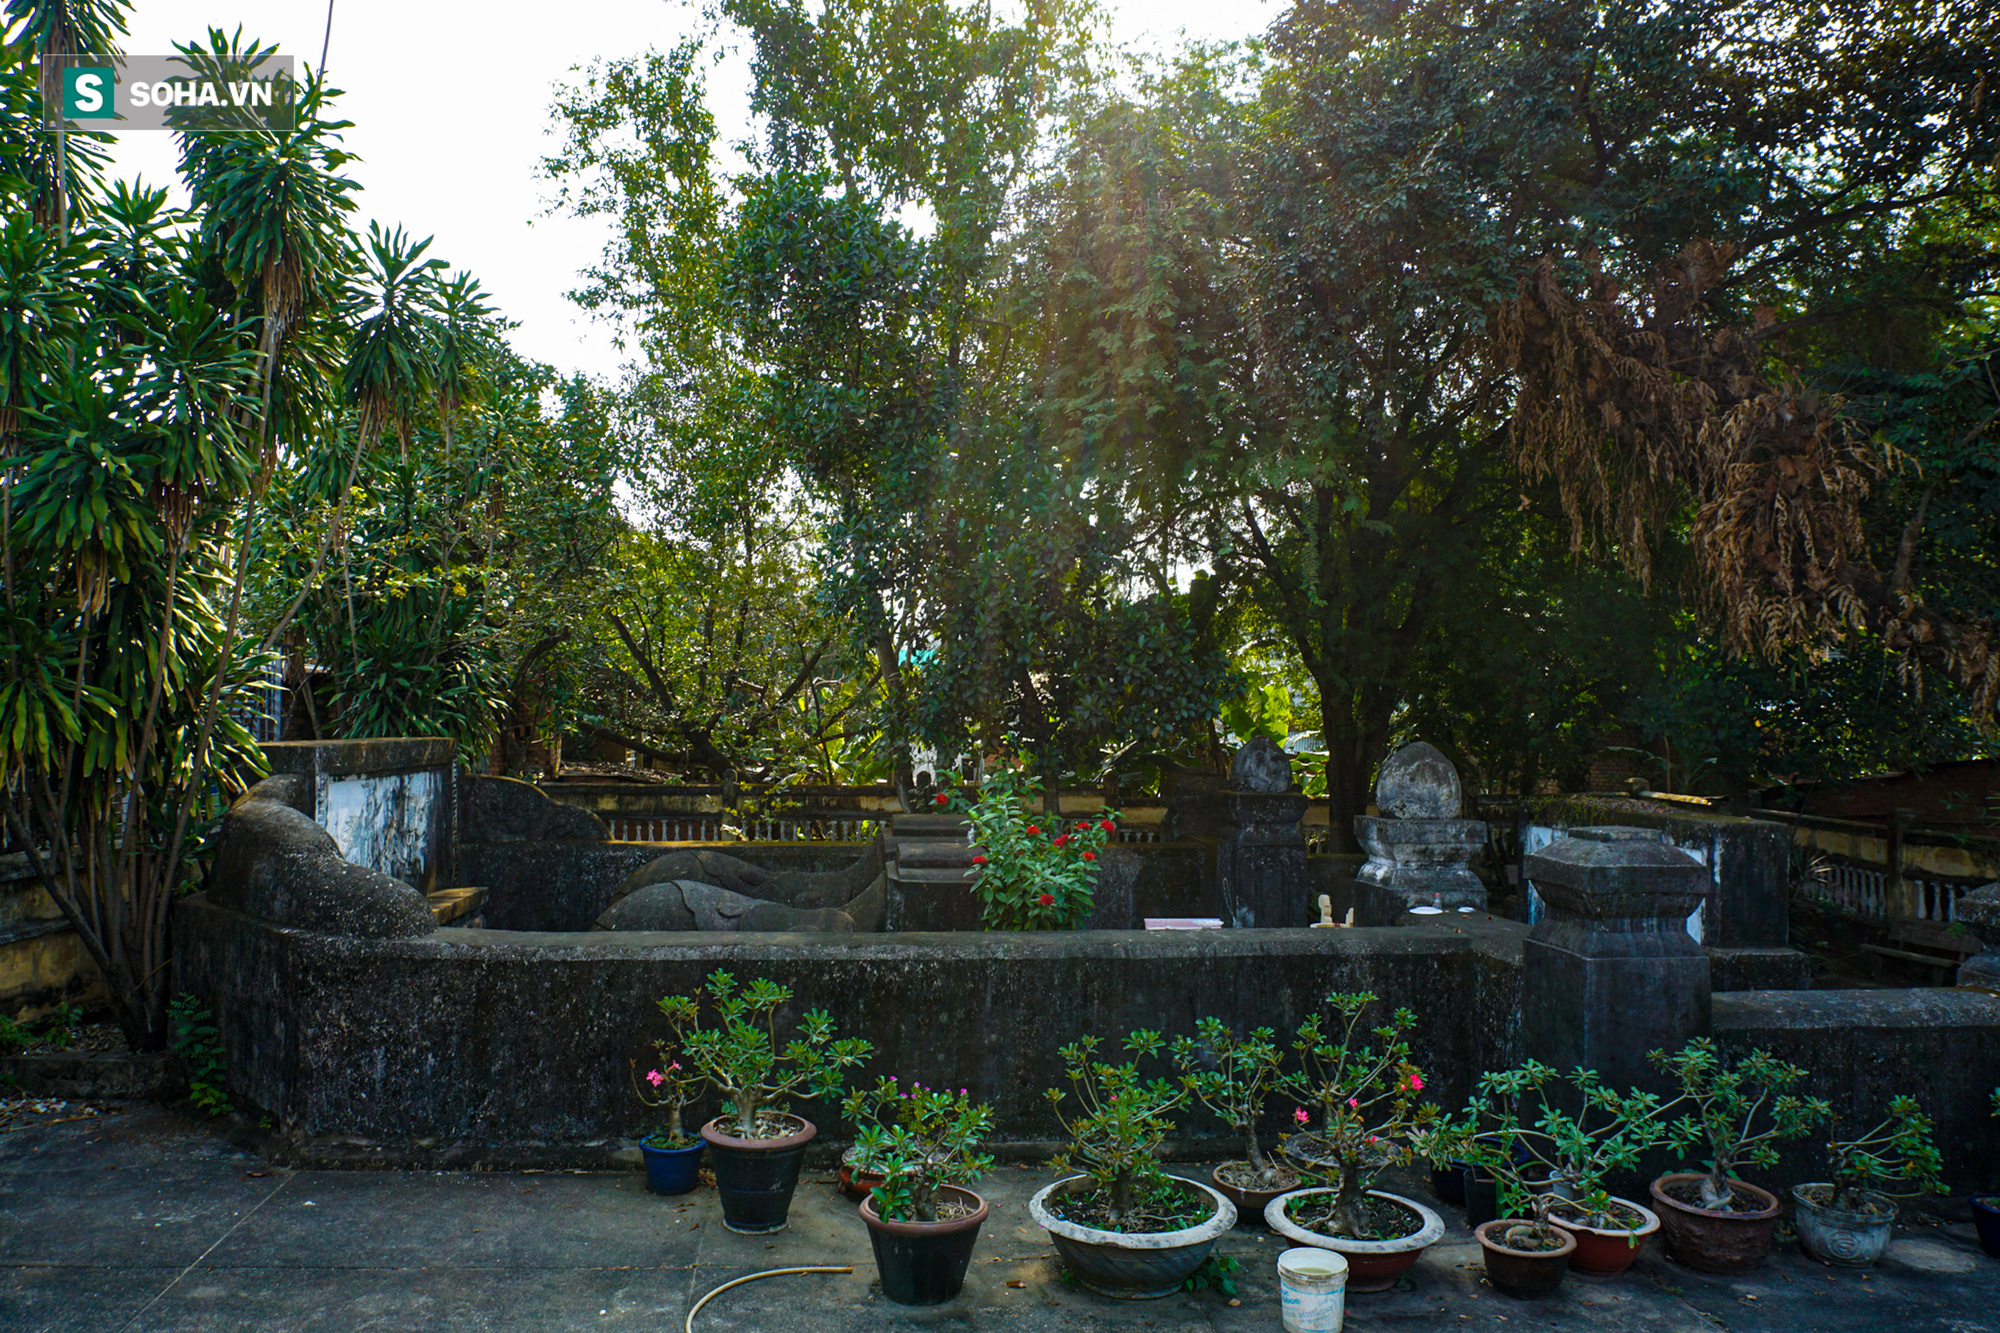 Bí ẩn mộ yểm tại nơi yên nghỉ của người 3 lần từ chối chức bộ trưởng của vua Minh Mạng - Ảnh 1.